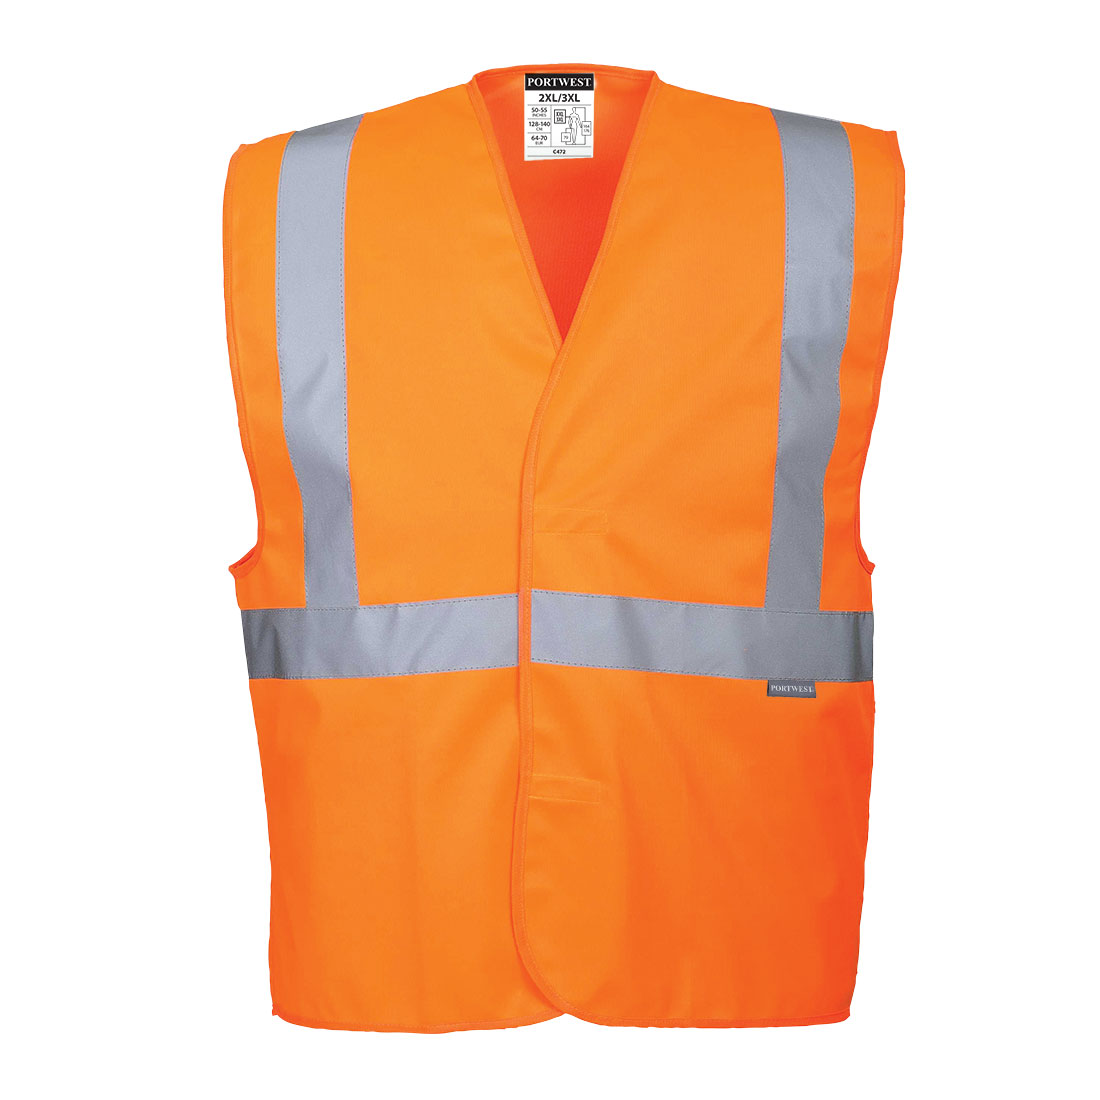 Reflexní vesta s jedním pruhem Barva: oranžová, Velikost: L/XL